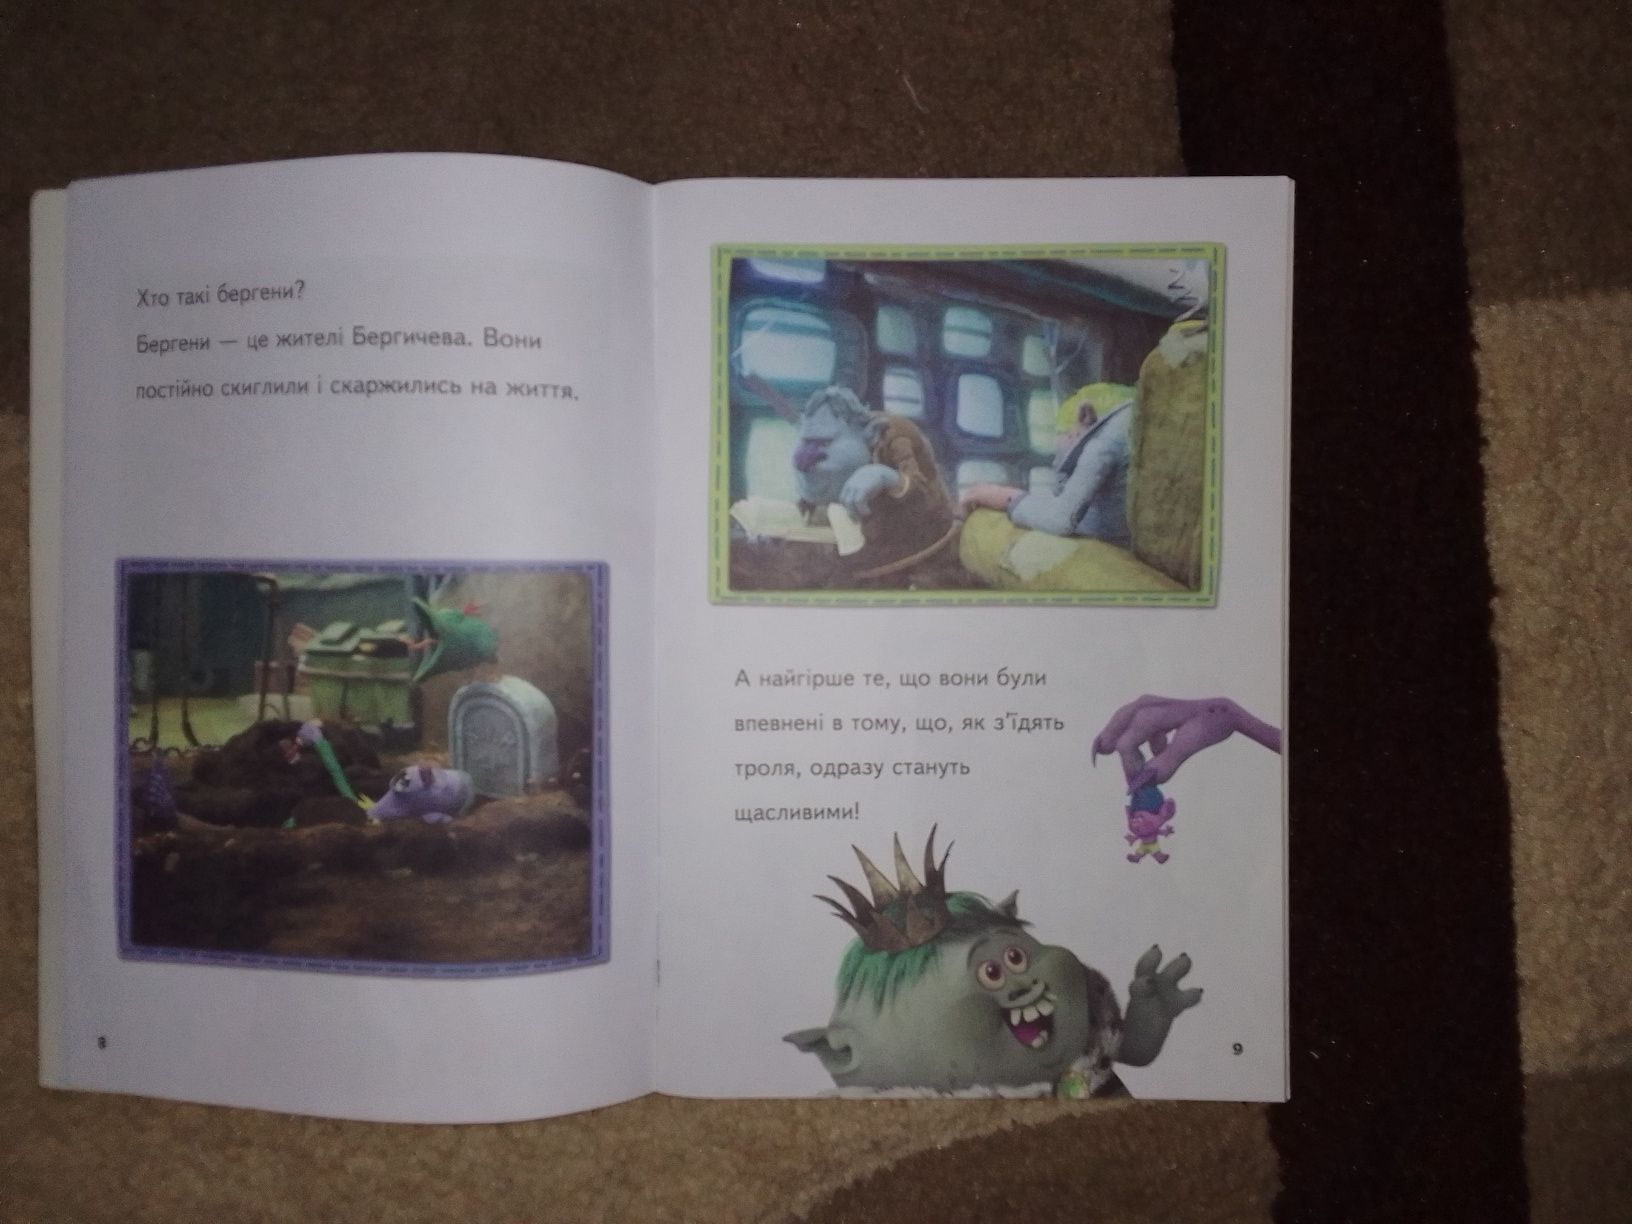 Книга для ребенка "Троли "